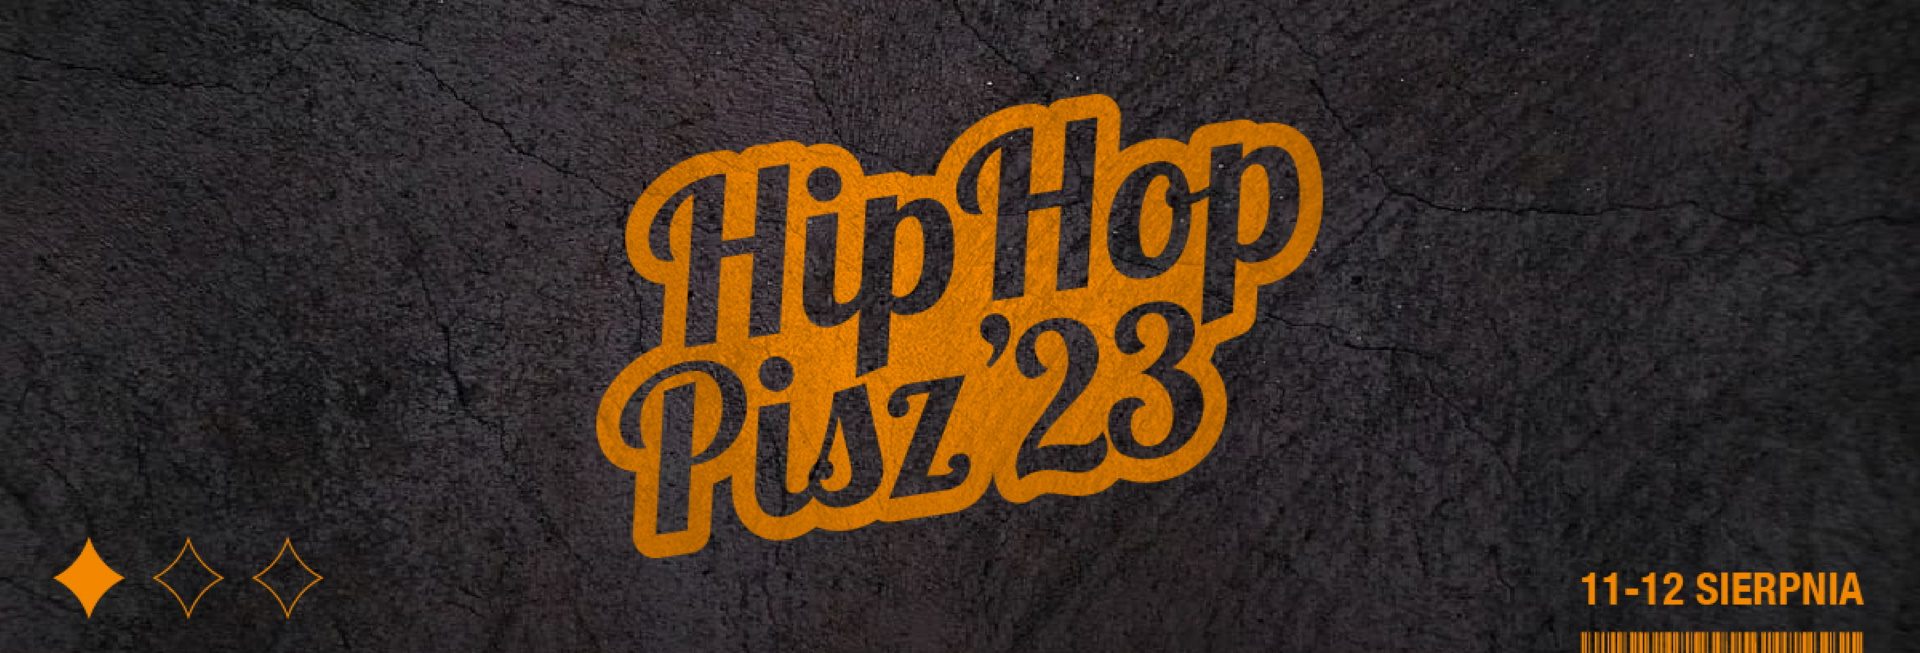 Plakat zapraszający w dniach 11-12 sierpnia 2023 r. do Pisza na 7. edycję Hip Hop Pisz 2023.